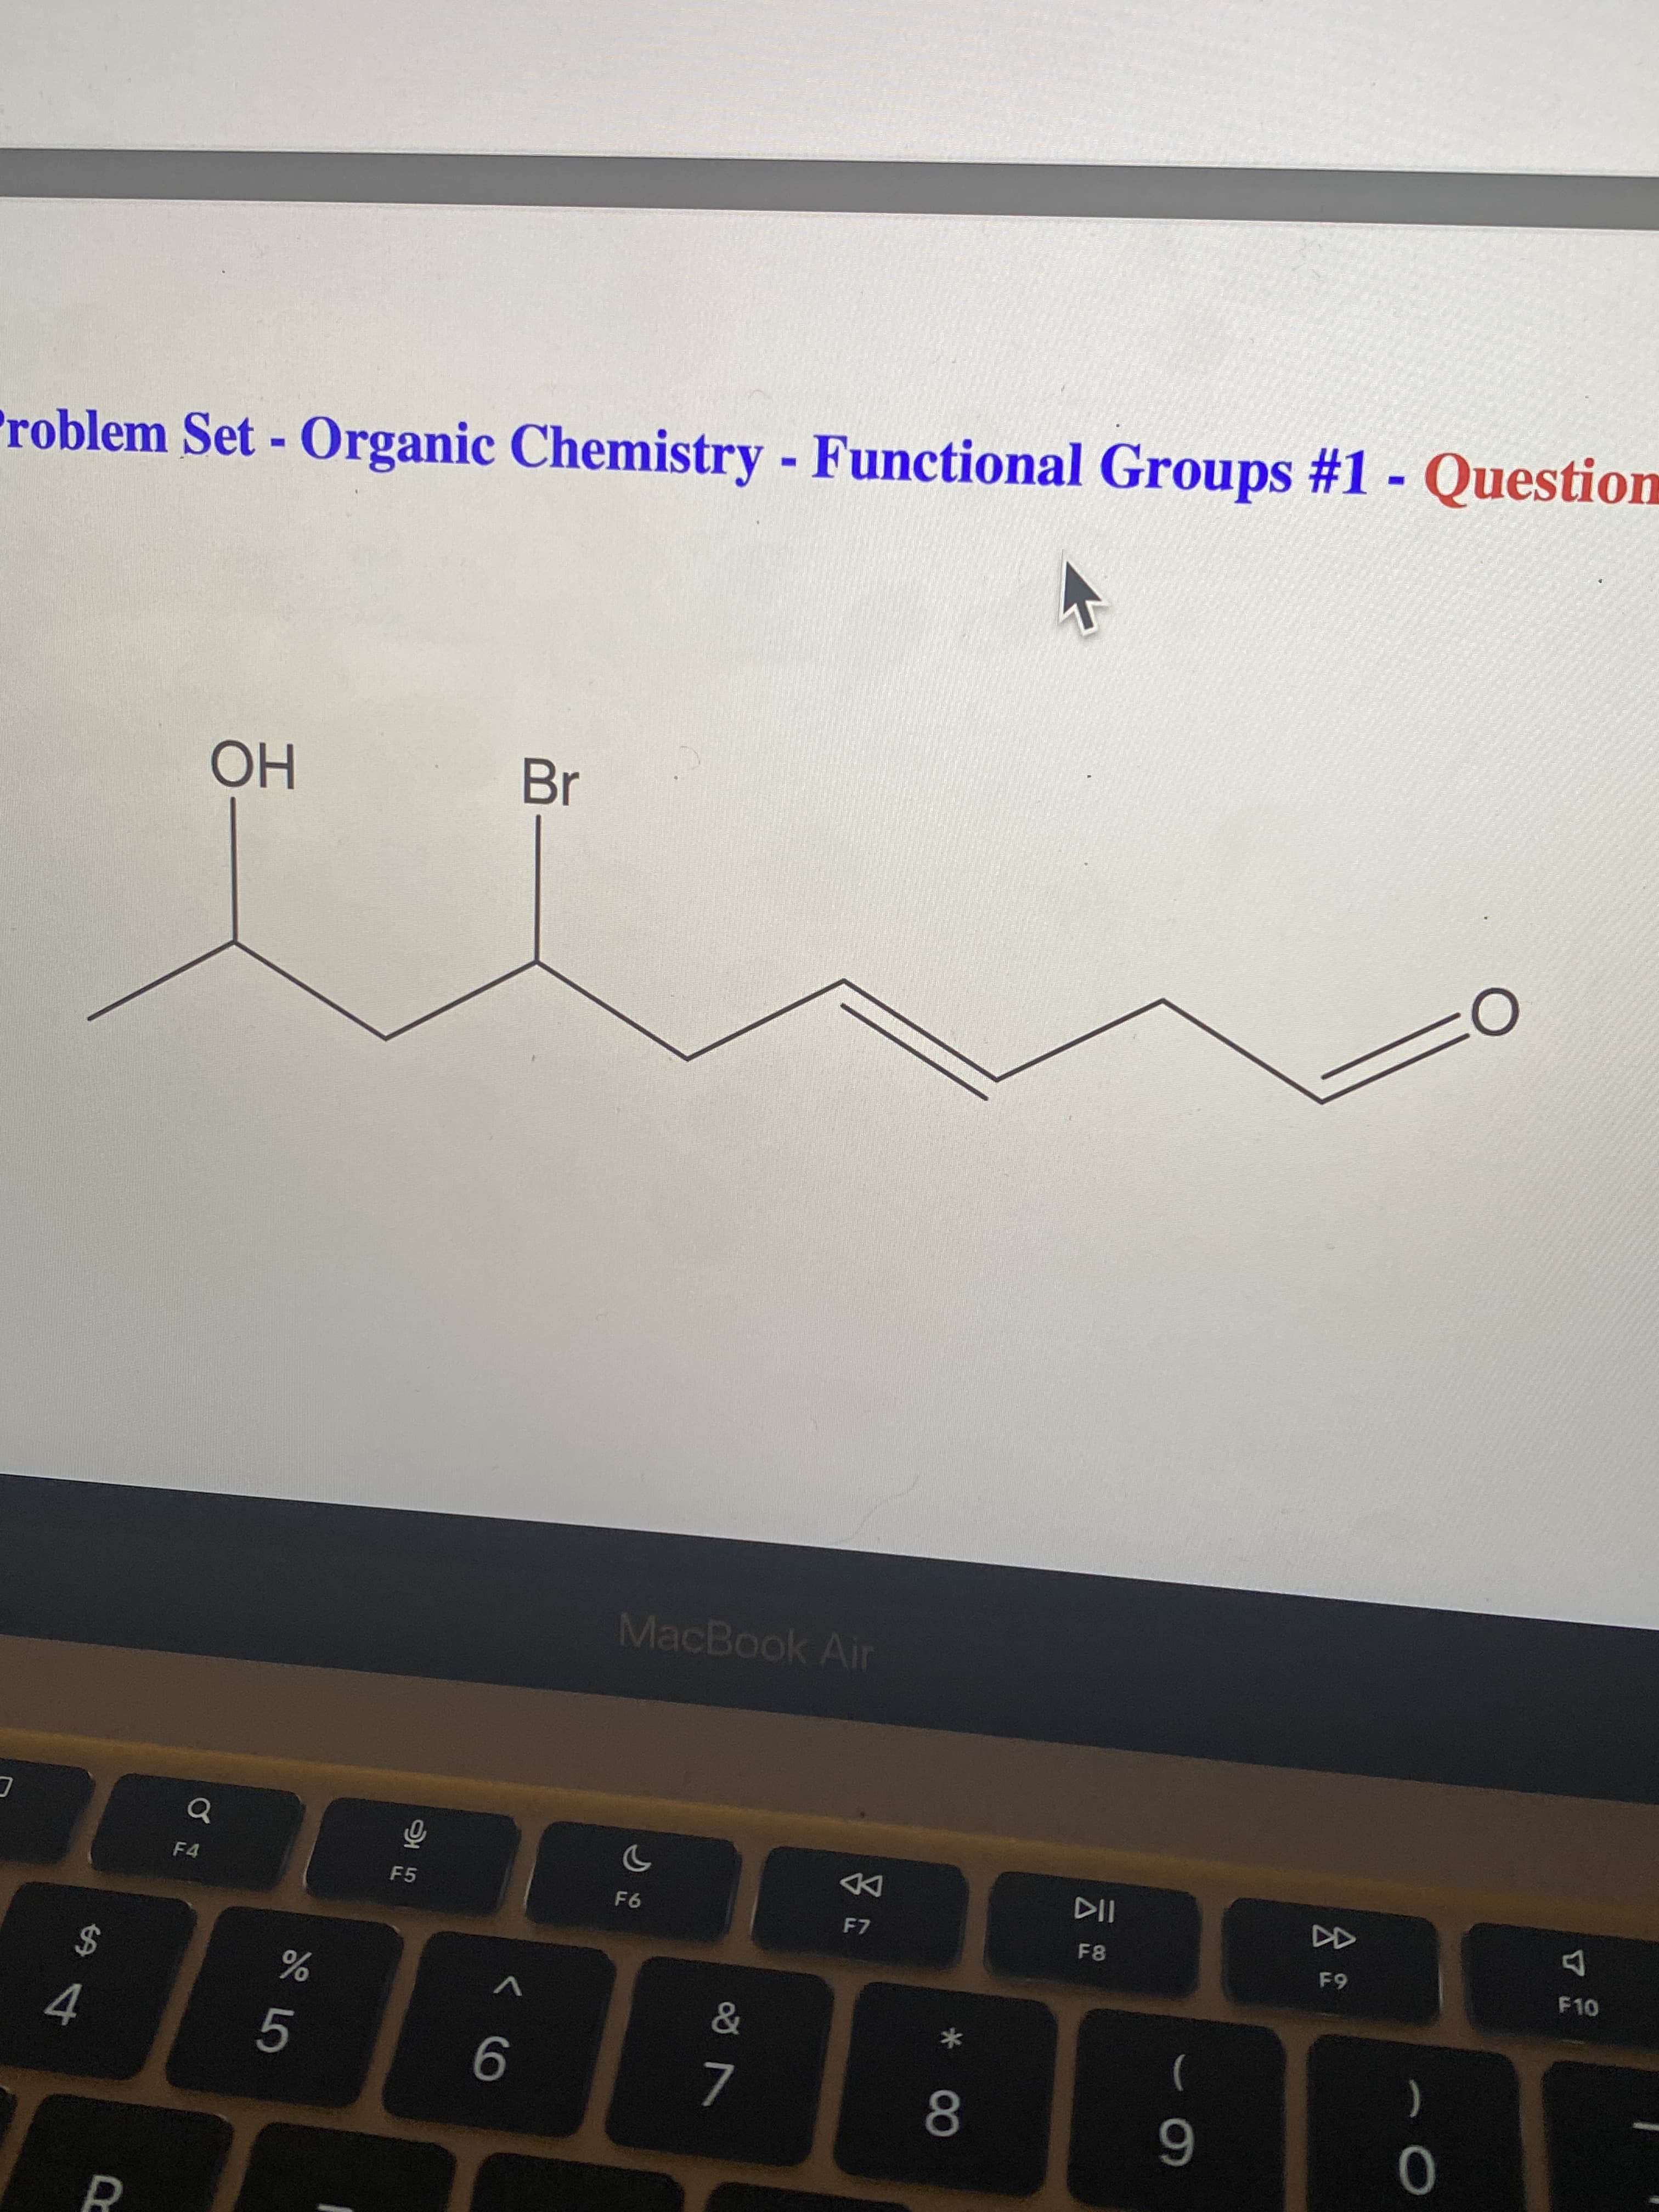 会
00
PR
roblem Set - Organic Chemistry - Functional Groups #1 Question
Br
Но
MacBook Air
DD
F7
F4
F5
F6
F10
V
2$
*
)
5.
7.
6
